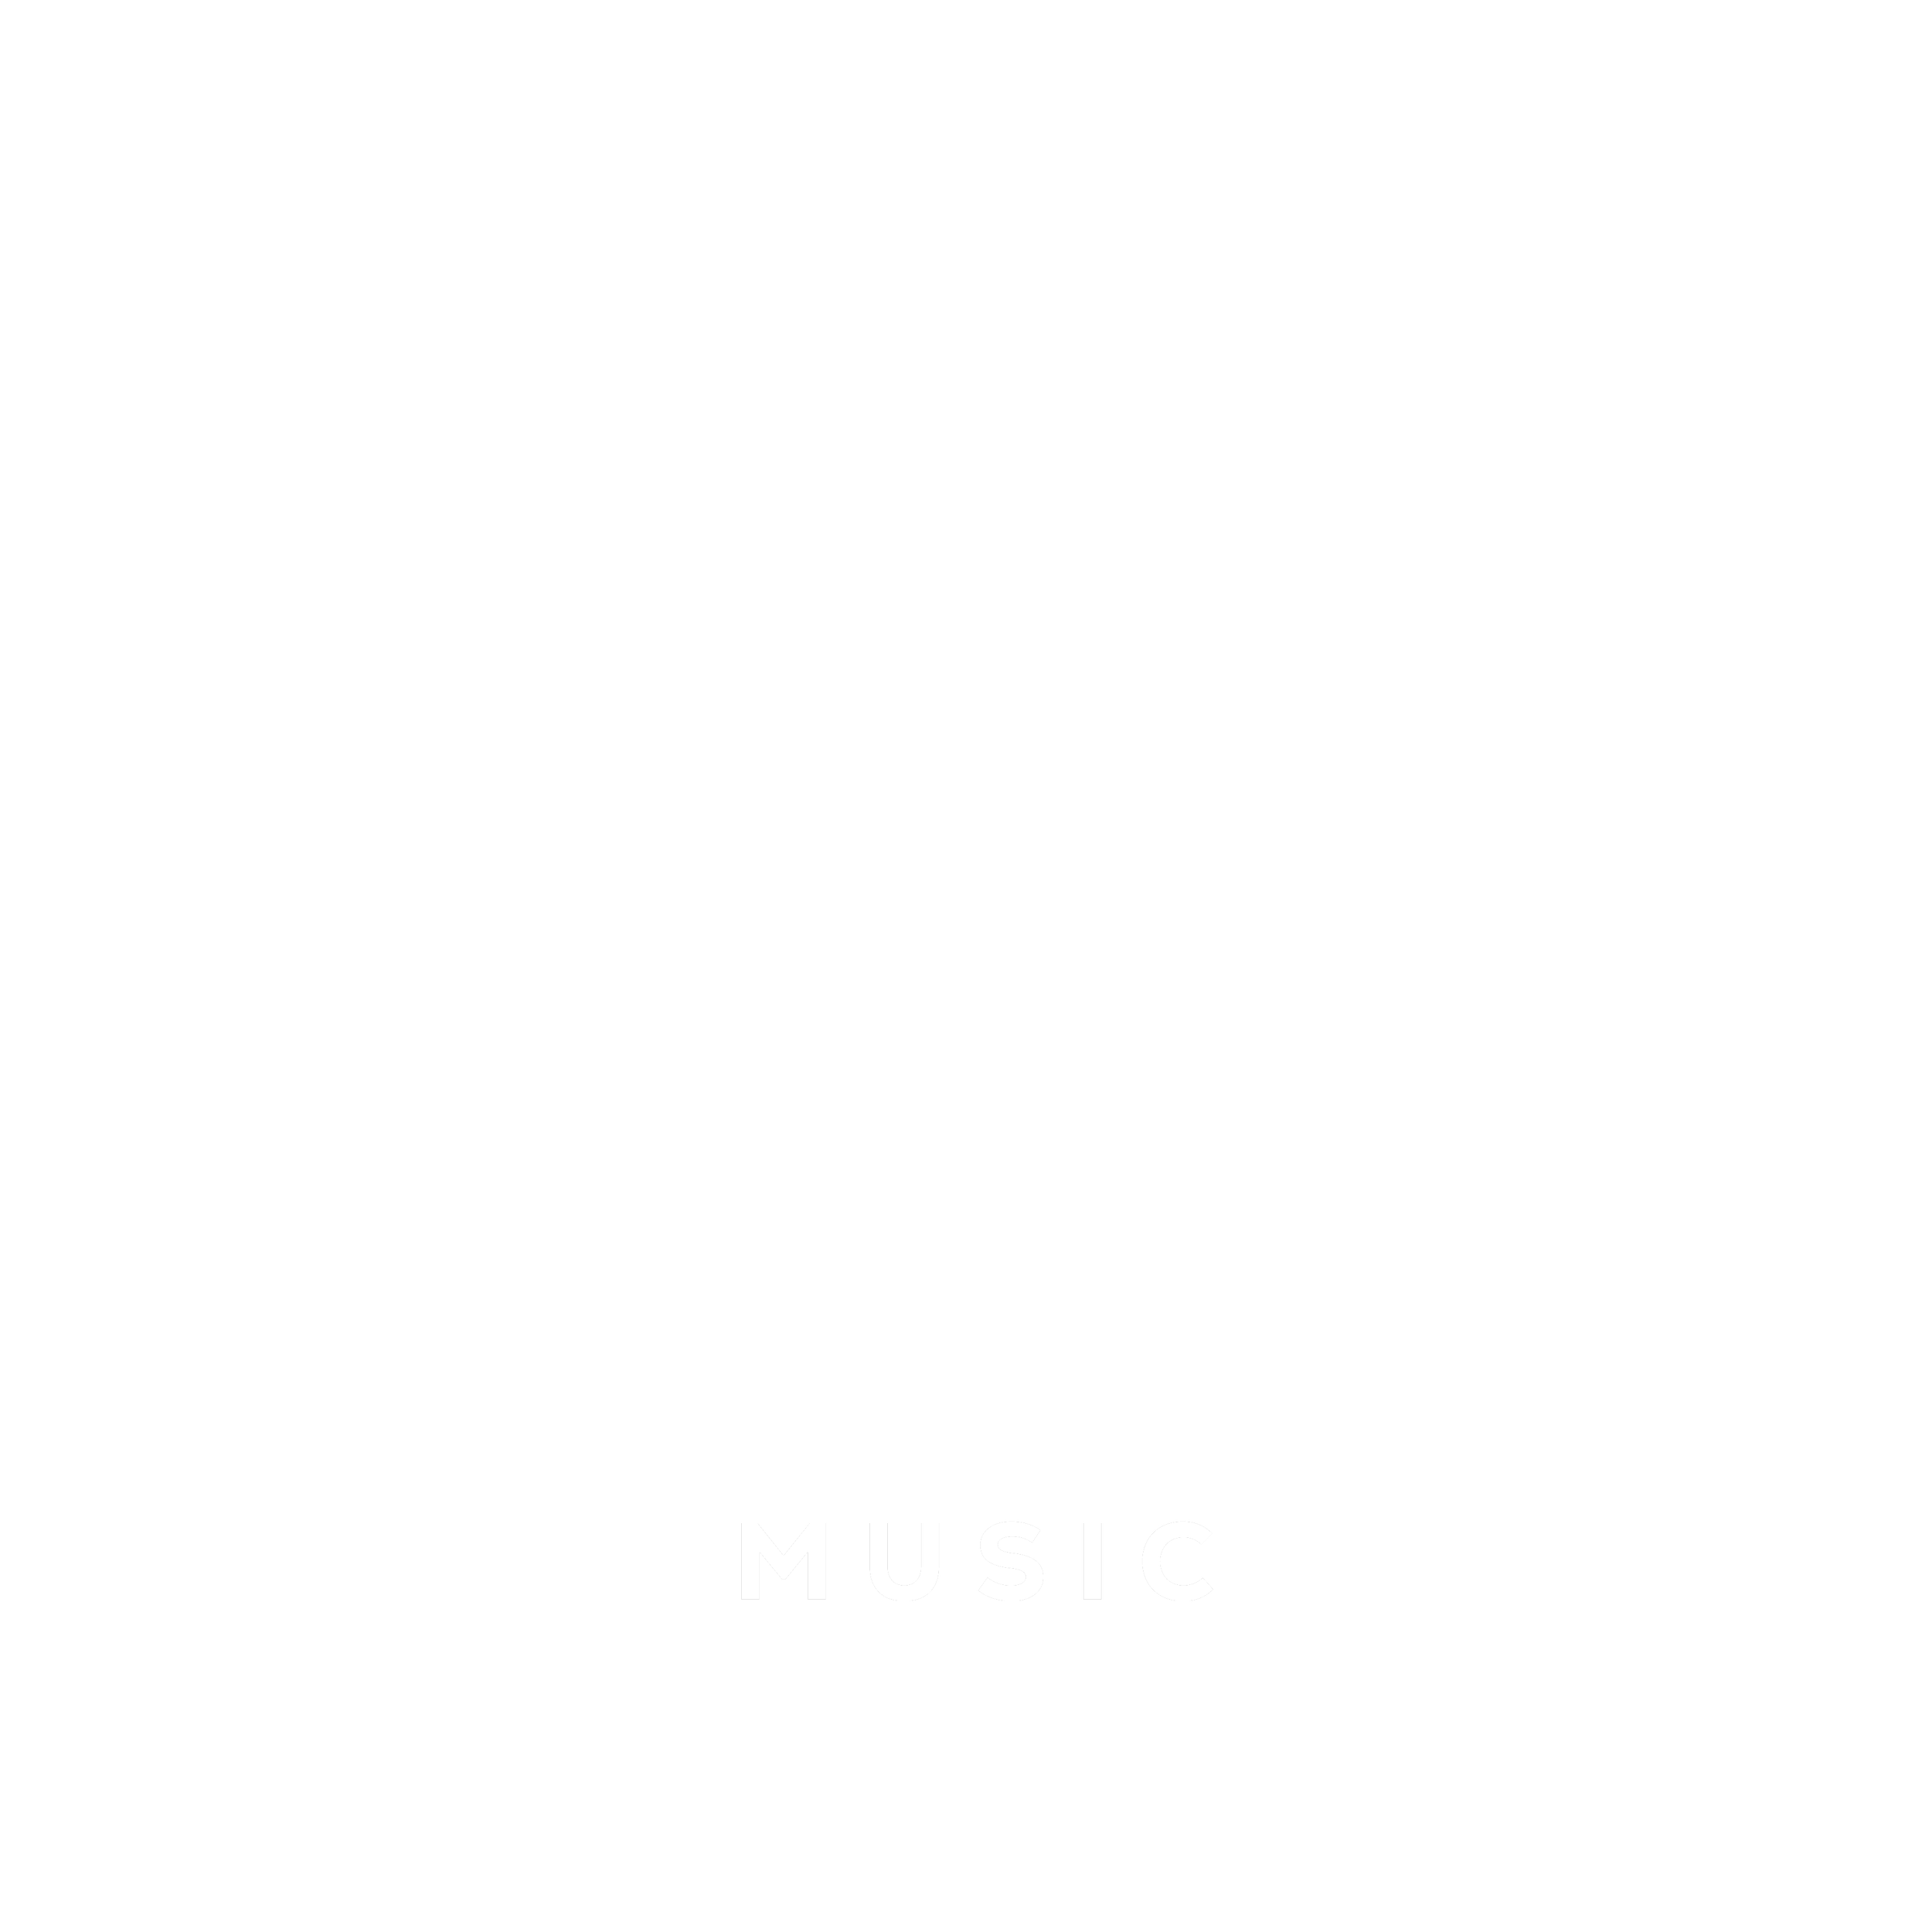 Horus Music Global-Black 01.png